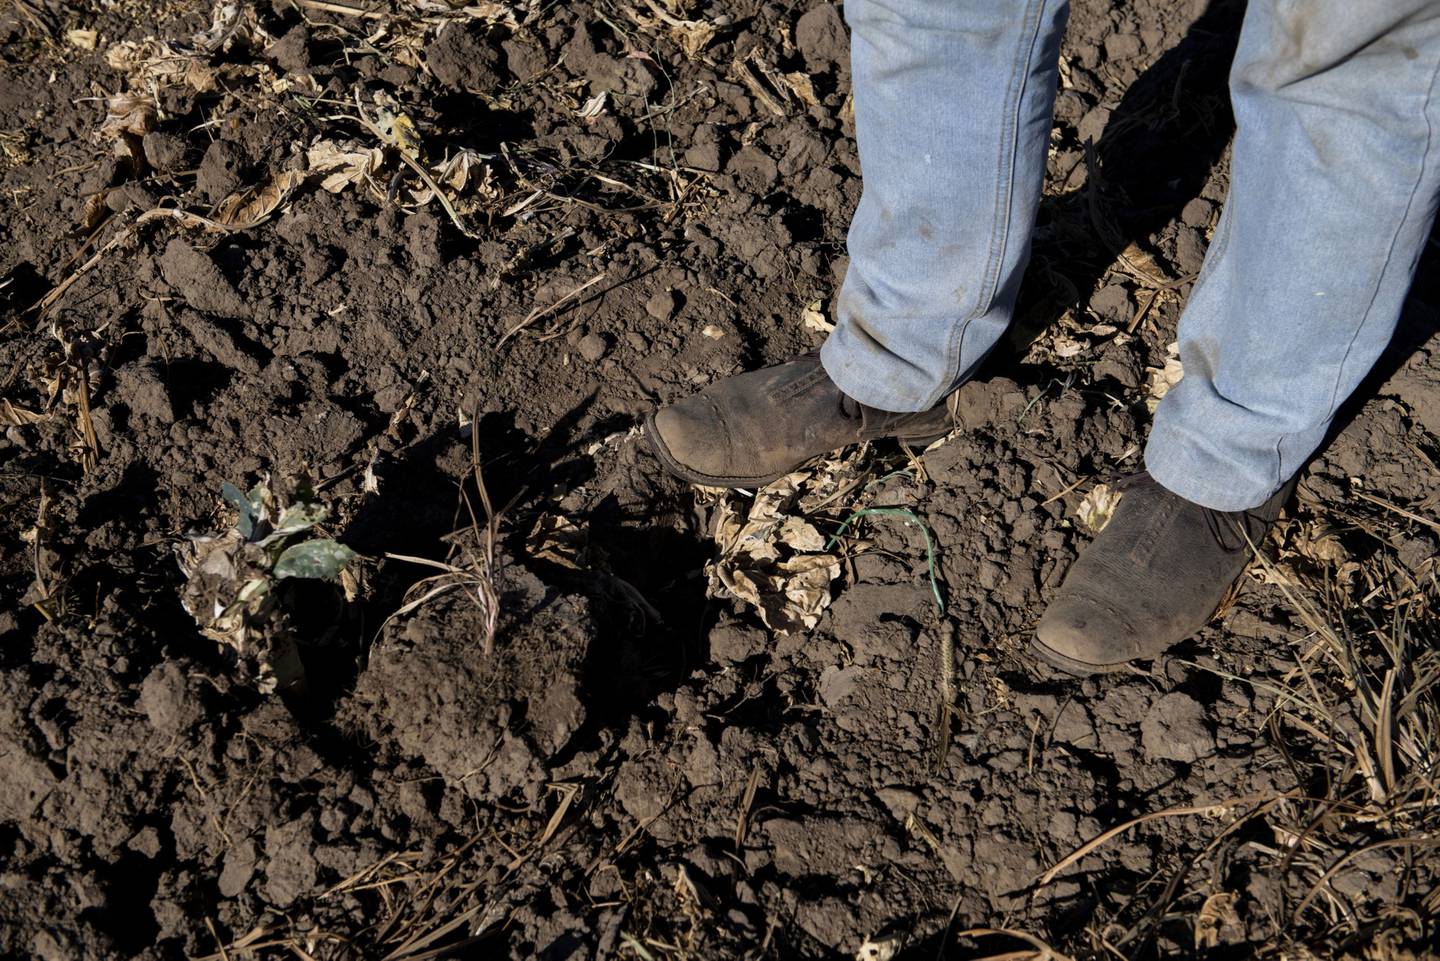 Un agricultor se encuentra sobre un cultivo muerto en un campo en Maule, febrero 2020.dfd